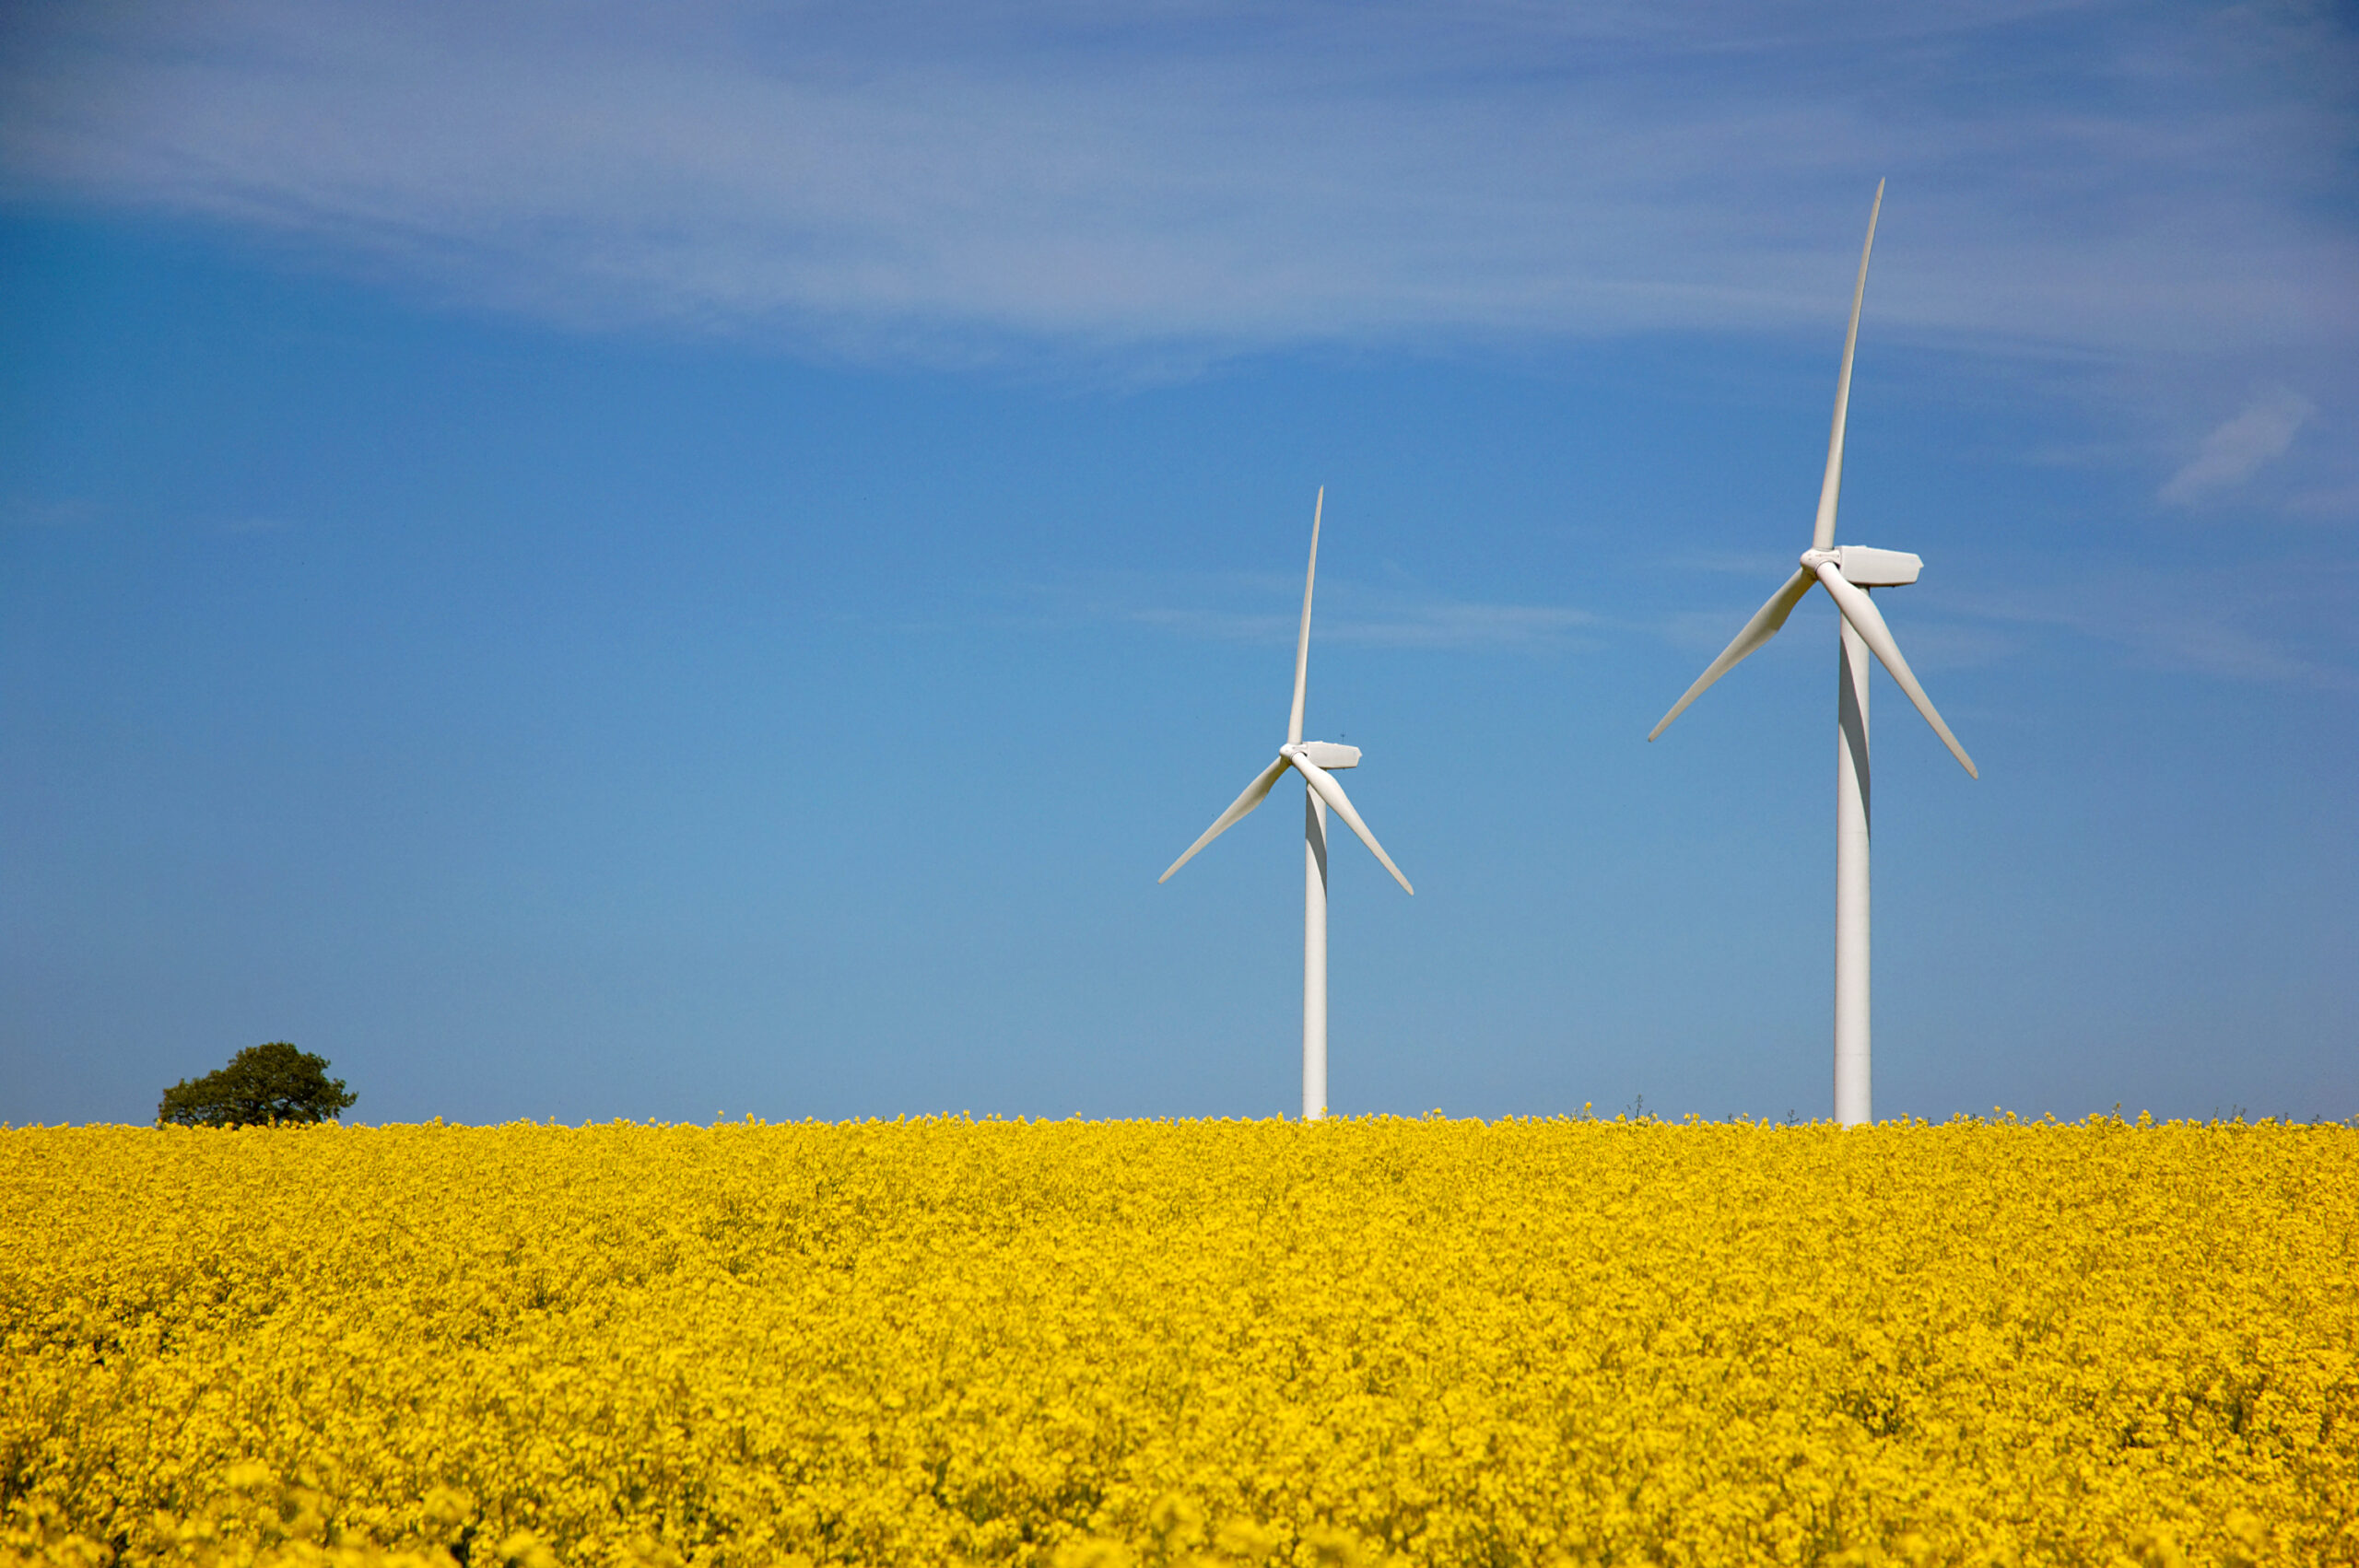 Österreich begibt Grüne Bundeswertpapiere, deren Erlöse in Investitionen etwa für erneuerbare Energien fließt. Der Grüne Kapitalmarkt floriert, Österreich erhält Nachhaltigkeitspreise. Foto: pixelio/Petra Bork